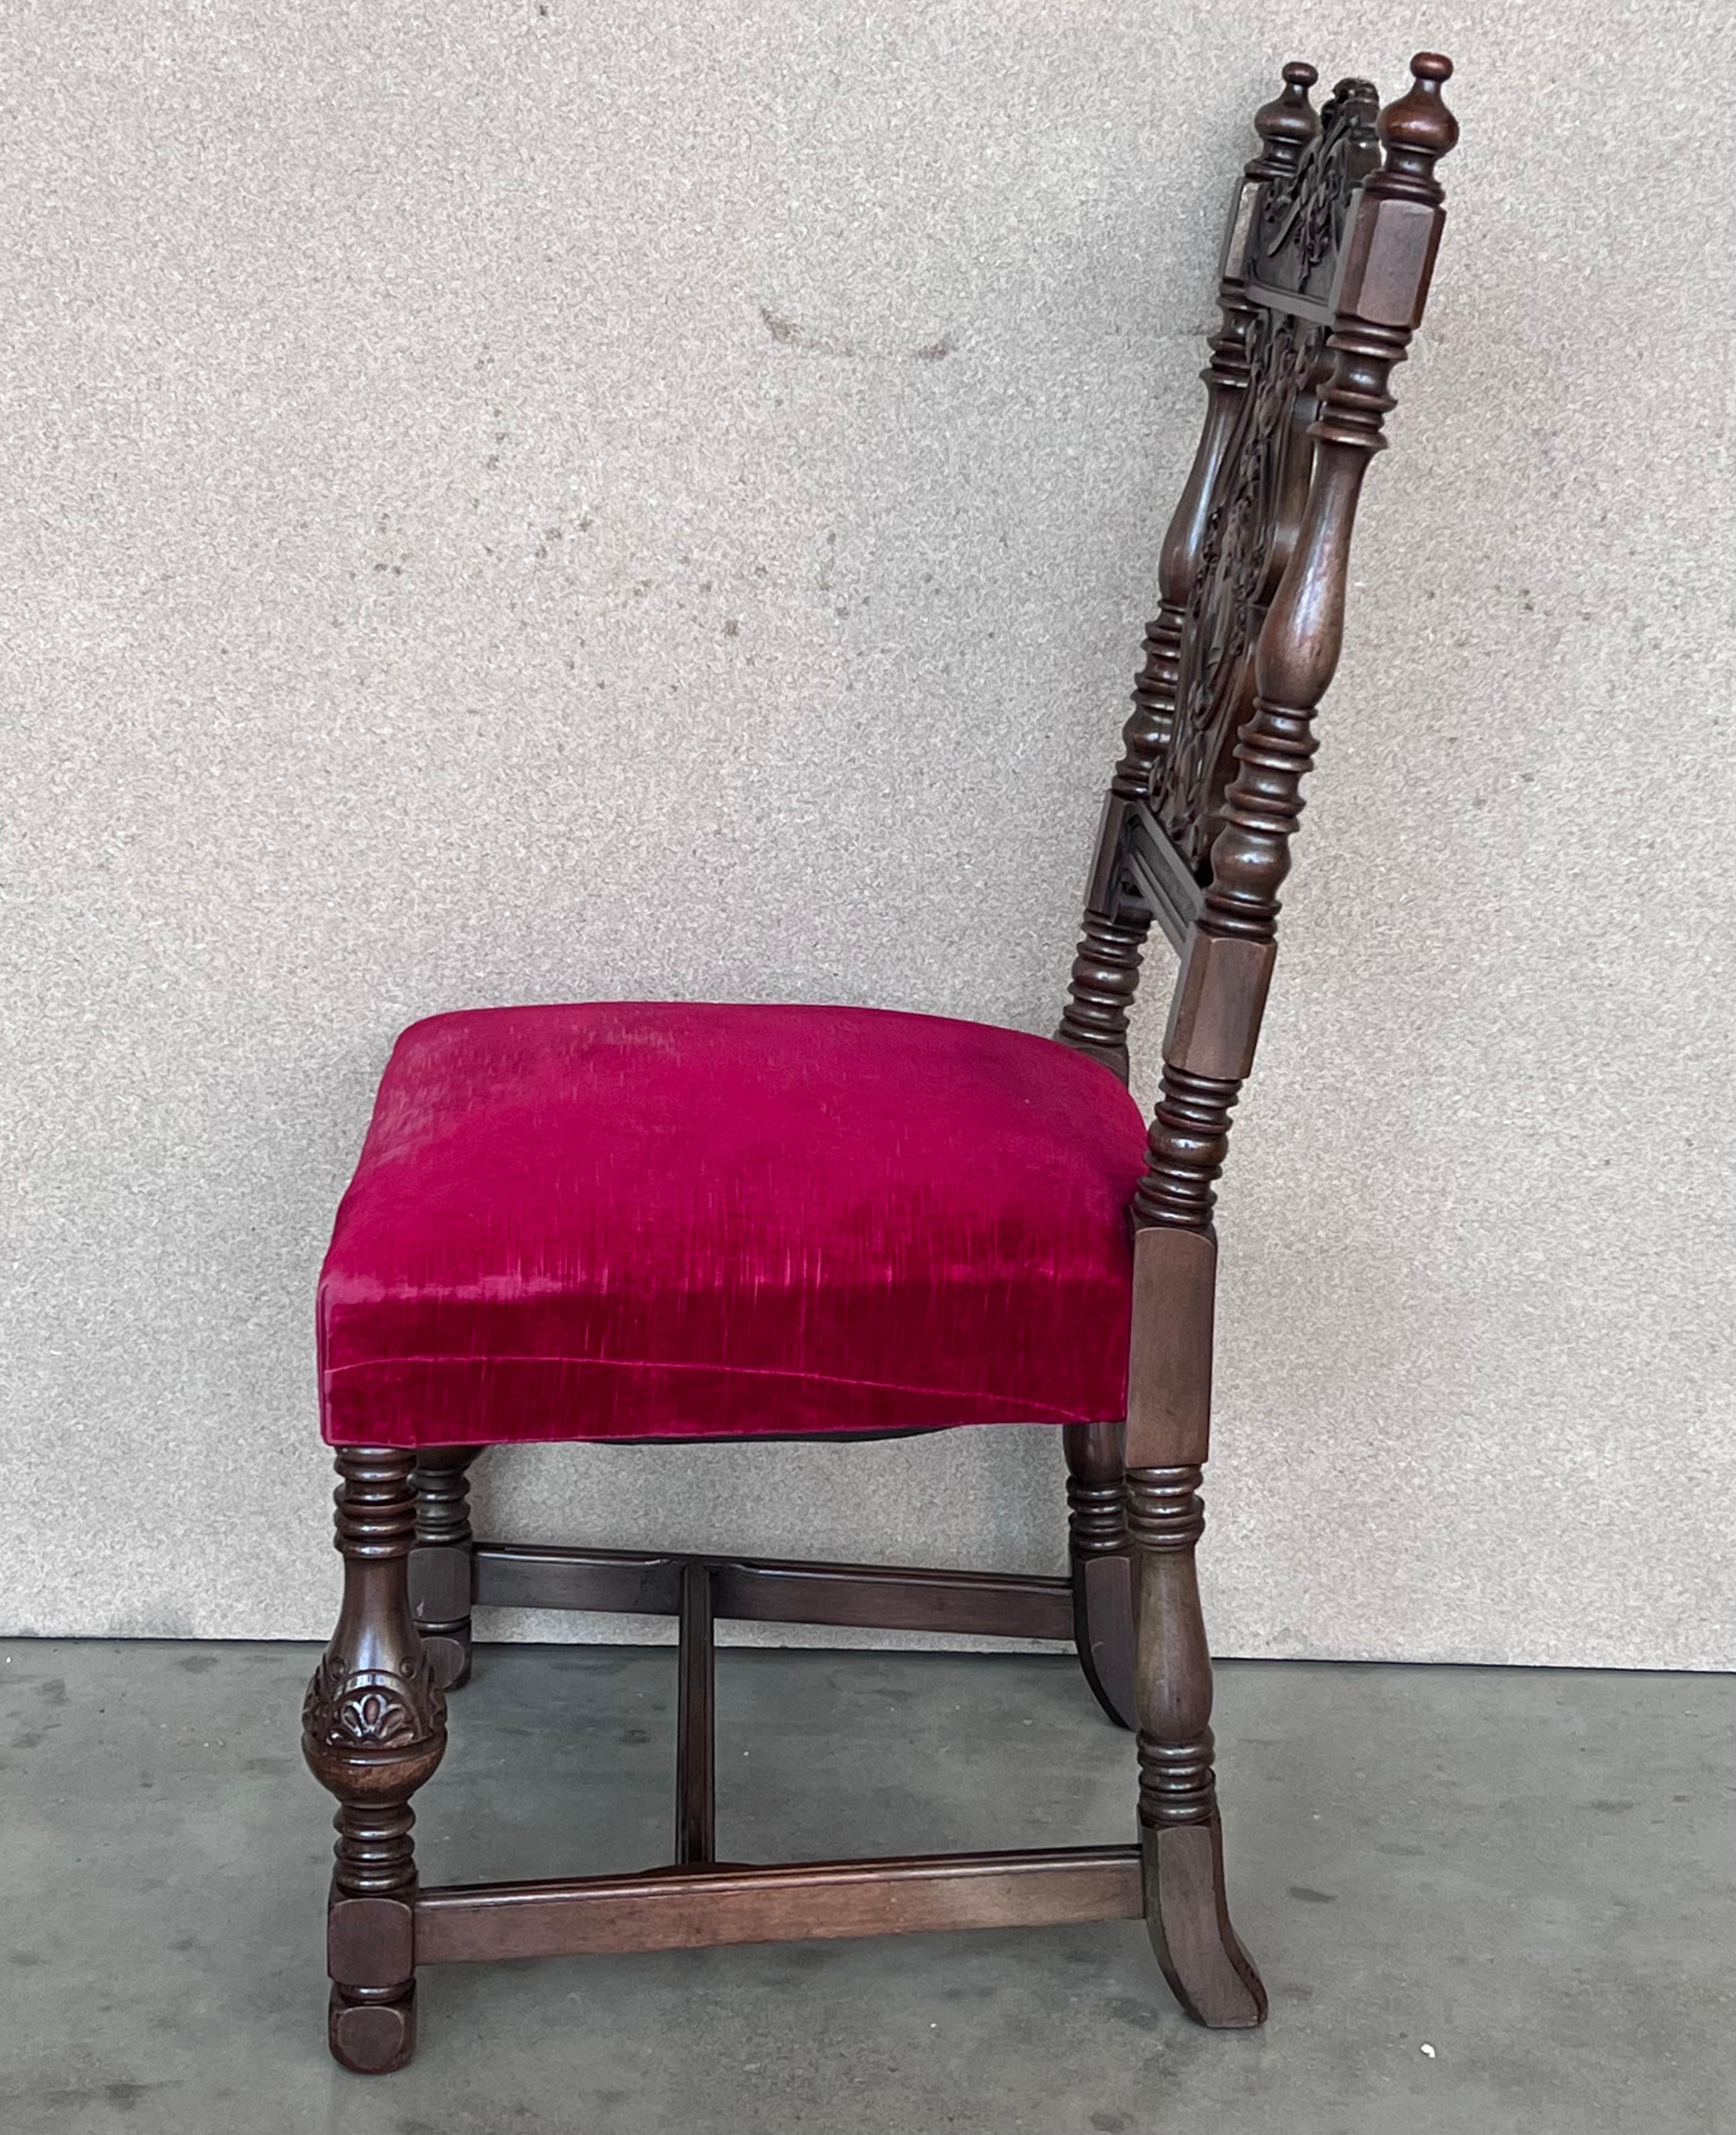 Fauteuil en noyer sculpté du 19ème siècle.
Parfait pour placer dans votre chambre ou dans votre cuisine
Les cadres à structure sculptée. Les pieds sont finis dans une finition hautement sculptée.
Il est équipé d'un siège en velours rouge.